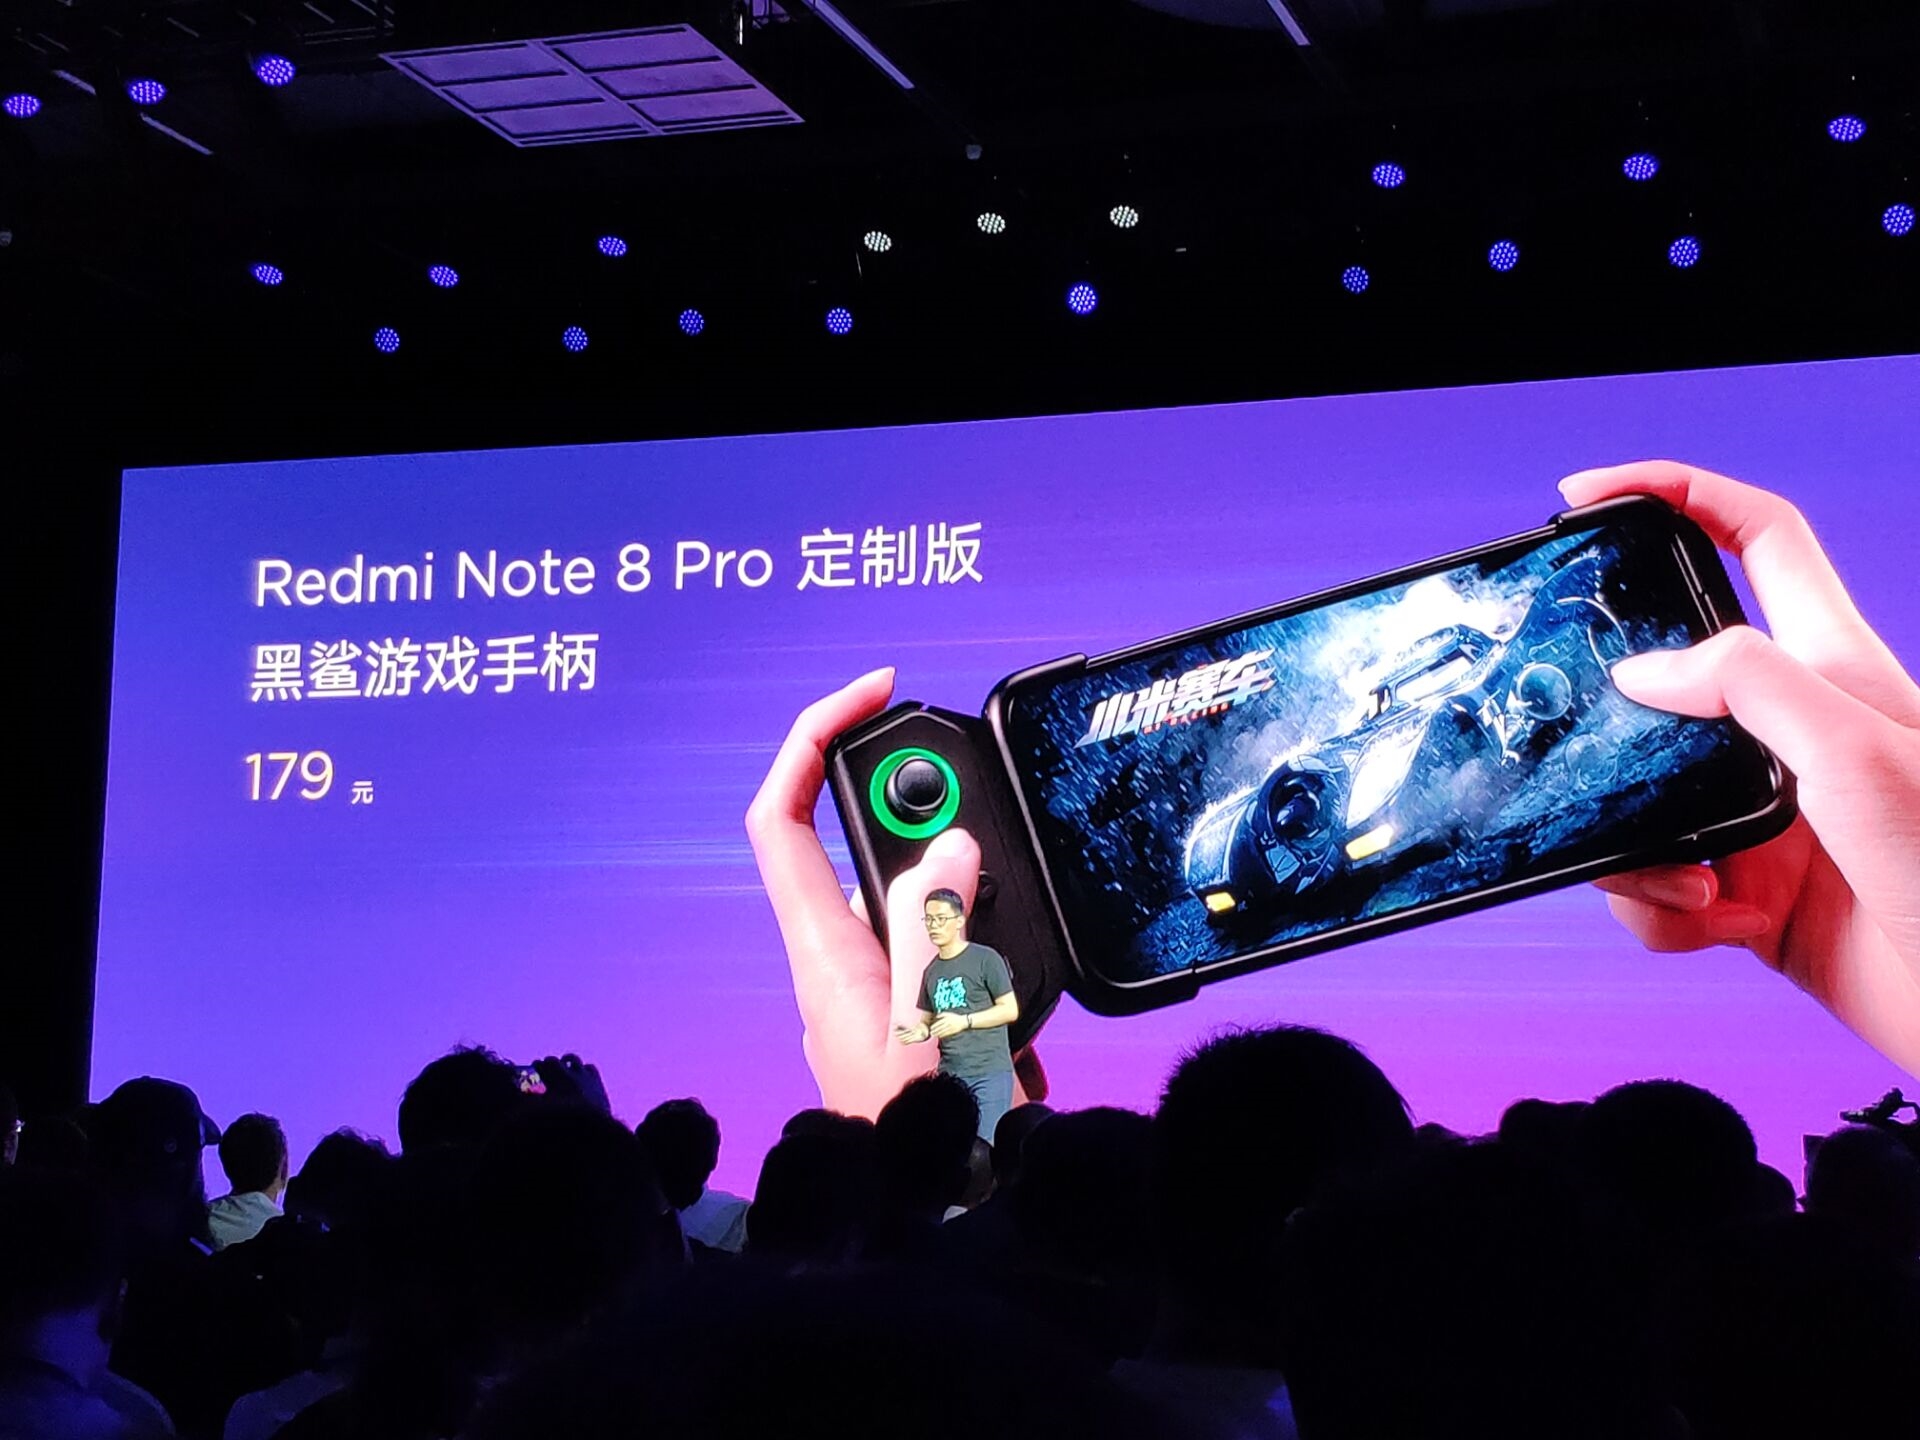 پس از مدتها انتظار Redmi Note 8 Pro رسماً رونمایی شد